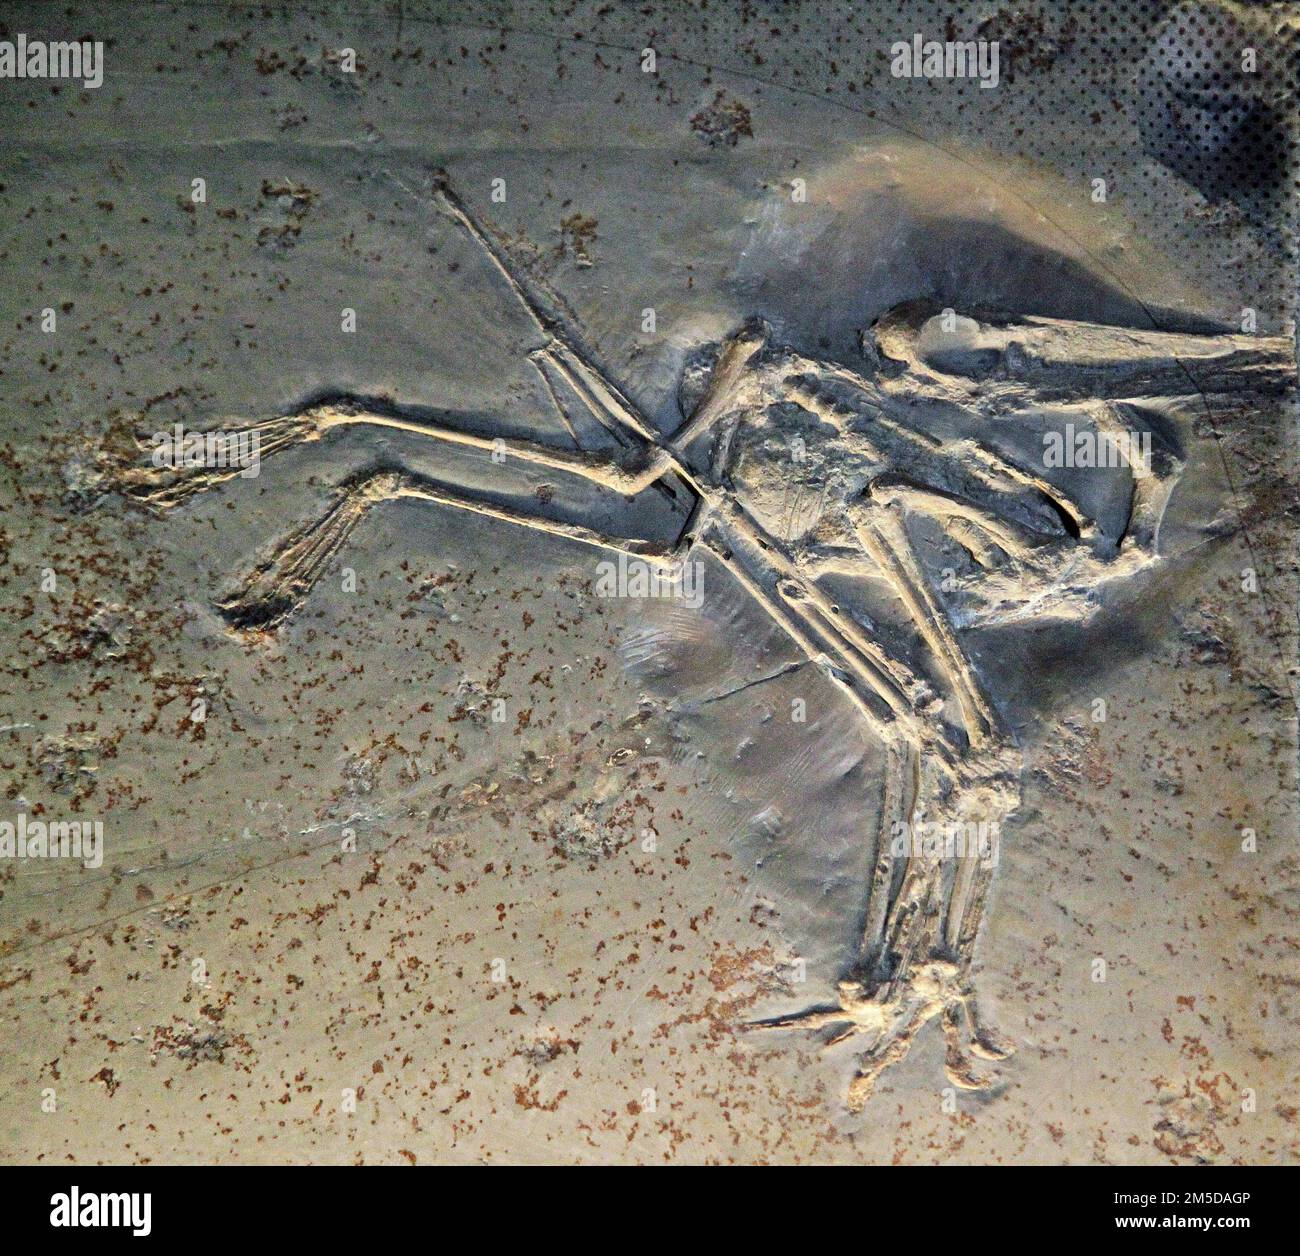 Pterodactylus antiquus.Pterodactylus fósil.Extinto género de pterosaurios.Solo una sola especie.El primer pterosaurio identificó ''reptil volador''.Solnhofen piedra caliza Baviera Alemania.Período jurásico tardío hace 150,8 a 148,5 millones de años.La membrana delgada o patagio se estiró entre sus huesos largos del dedo. Foto de stock